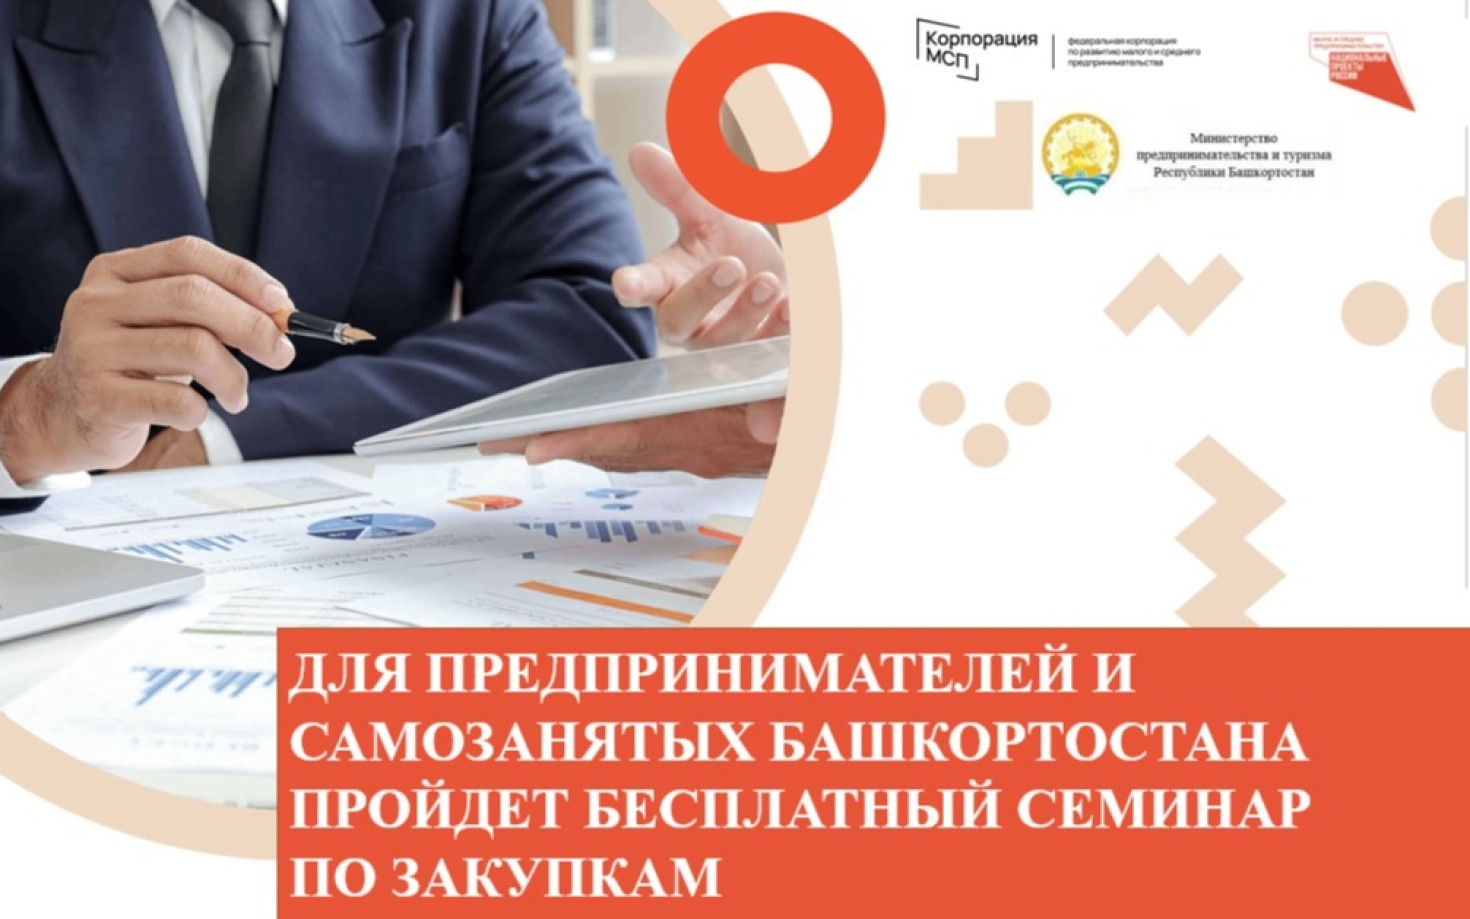 Для предпринимателей и самозанятых Башкортостана пройдет бесплатный семинар по закупкам